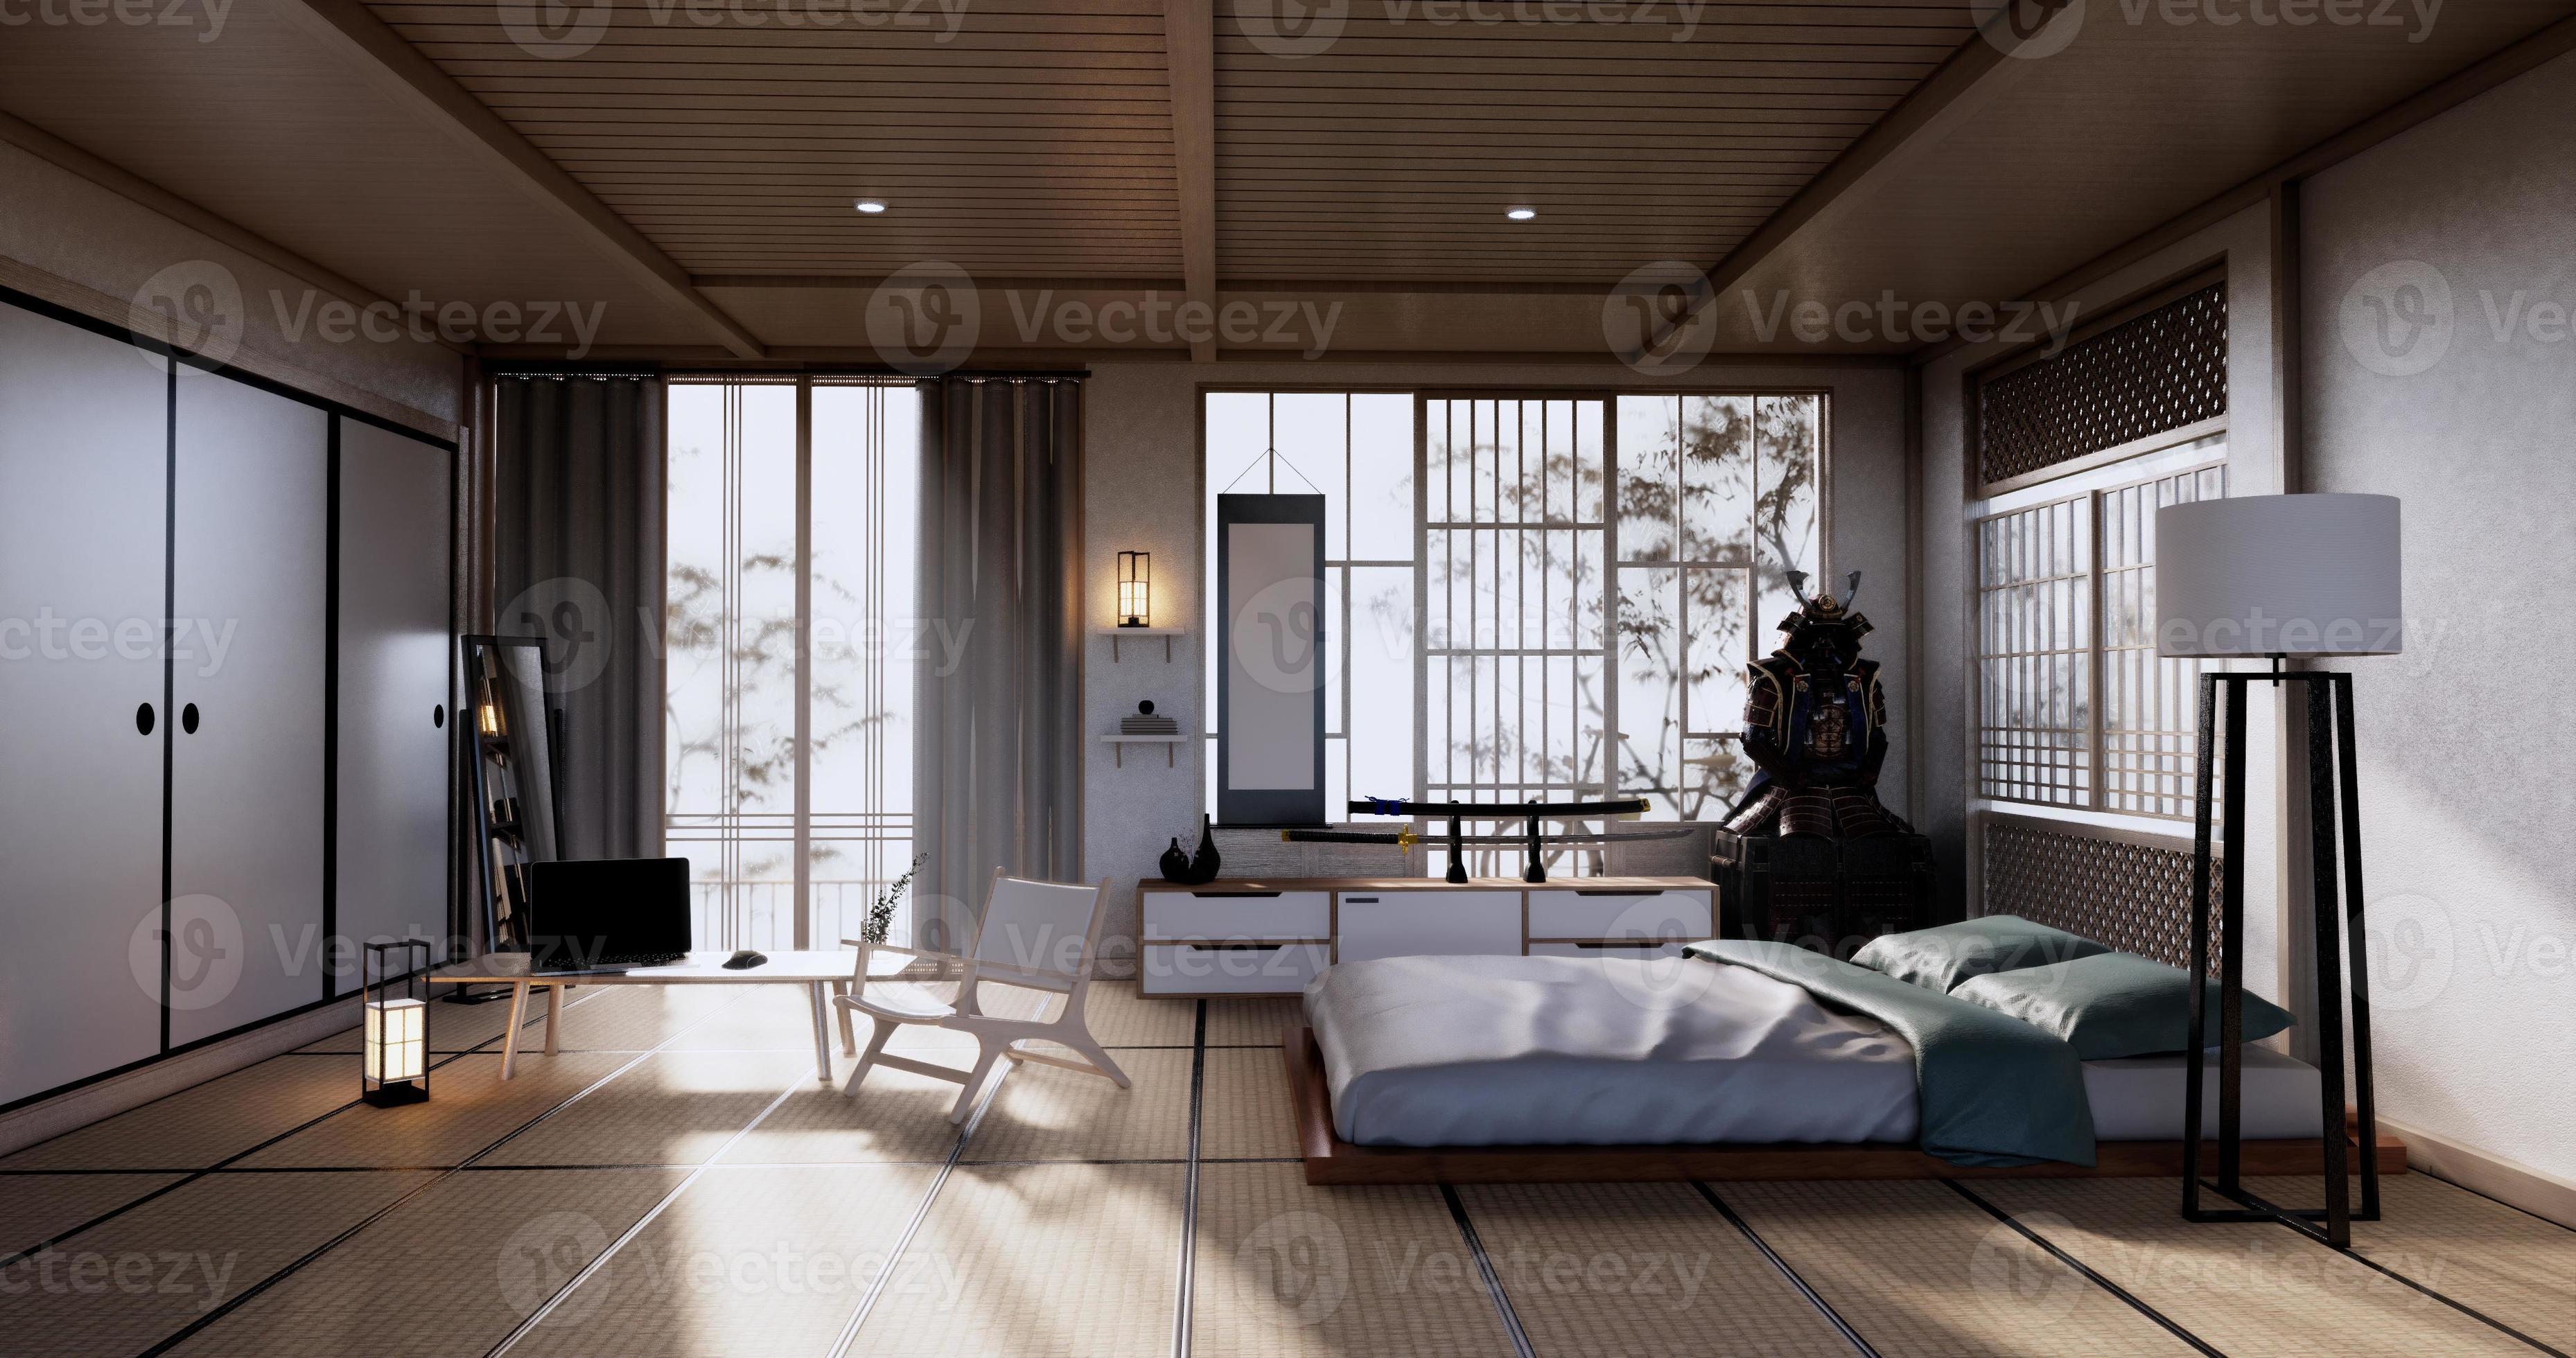 Blozend Zegevieren Uitbarsten slaapkamer Japans ontwerp op tropische kamer interieur en tatami mat vloer.  3D-rendering 4611009 Stockfoto